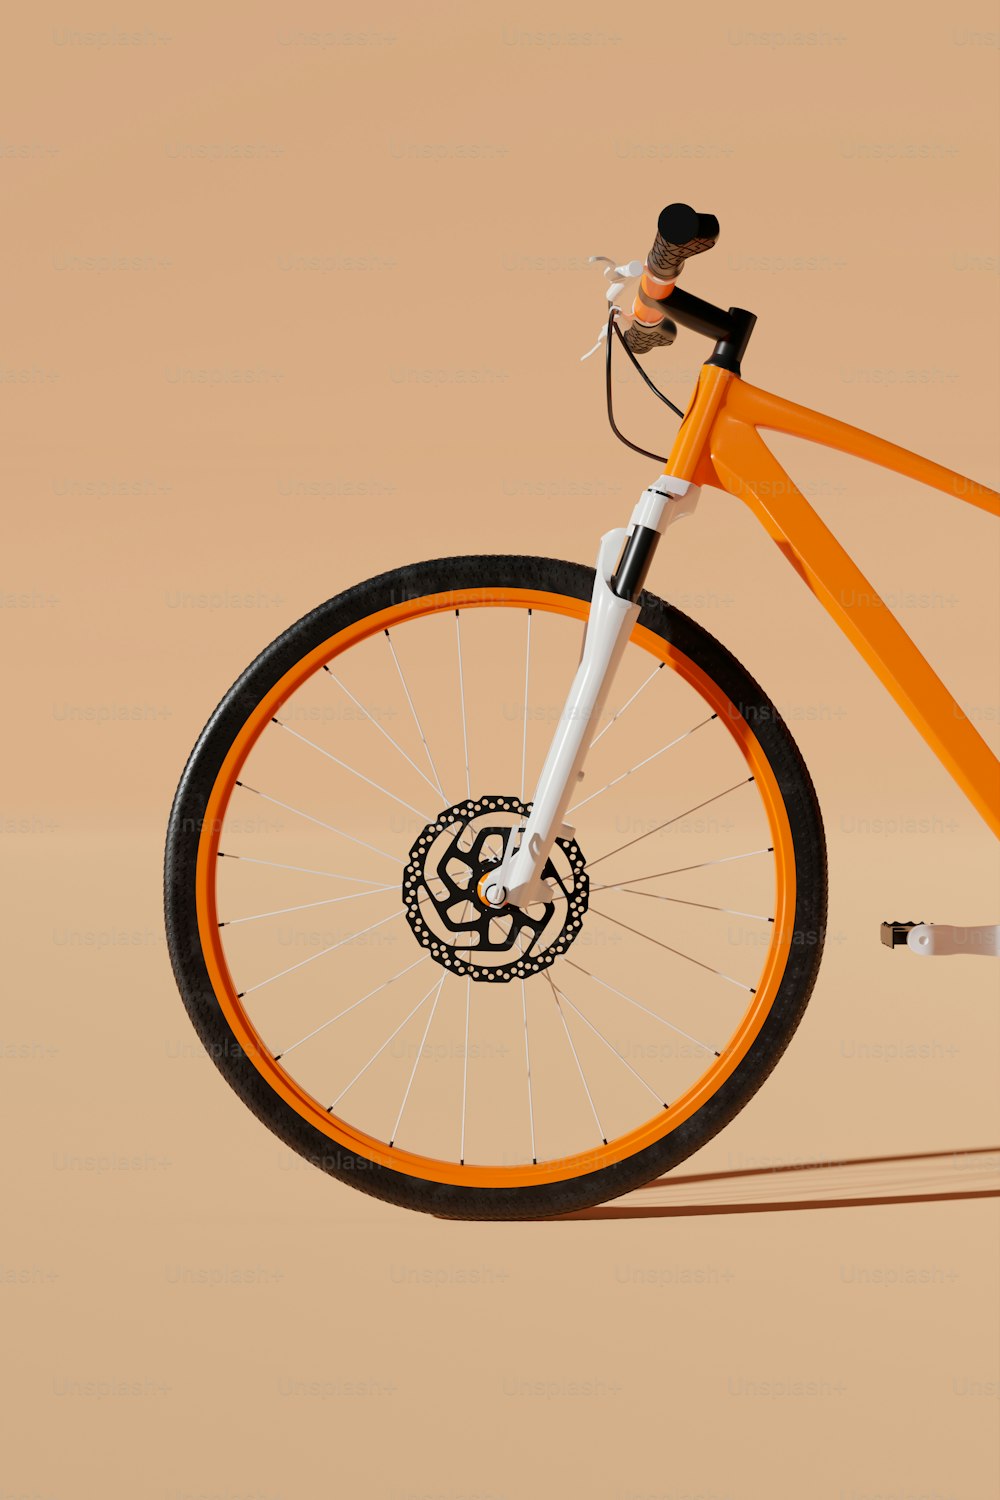 Una bici arancione con un emblema bianco e nero sulla ruota anteriore